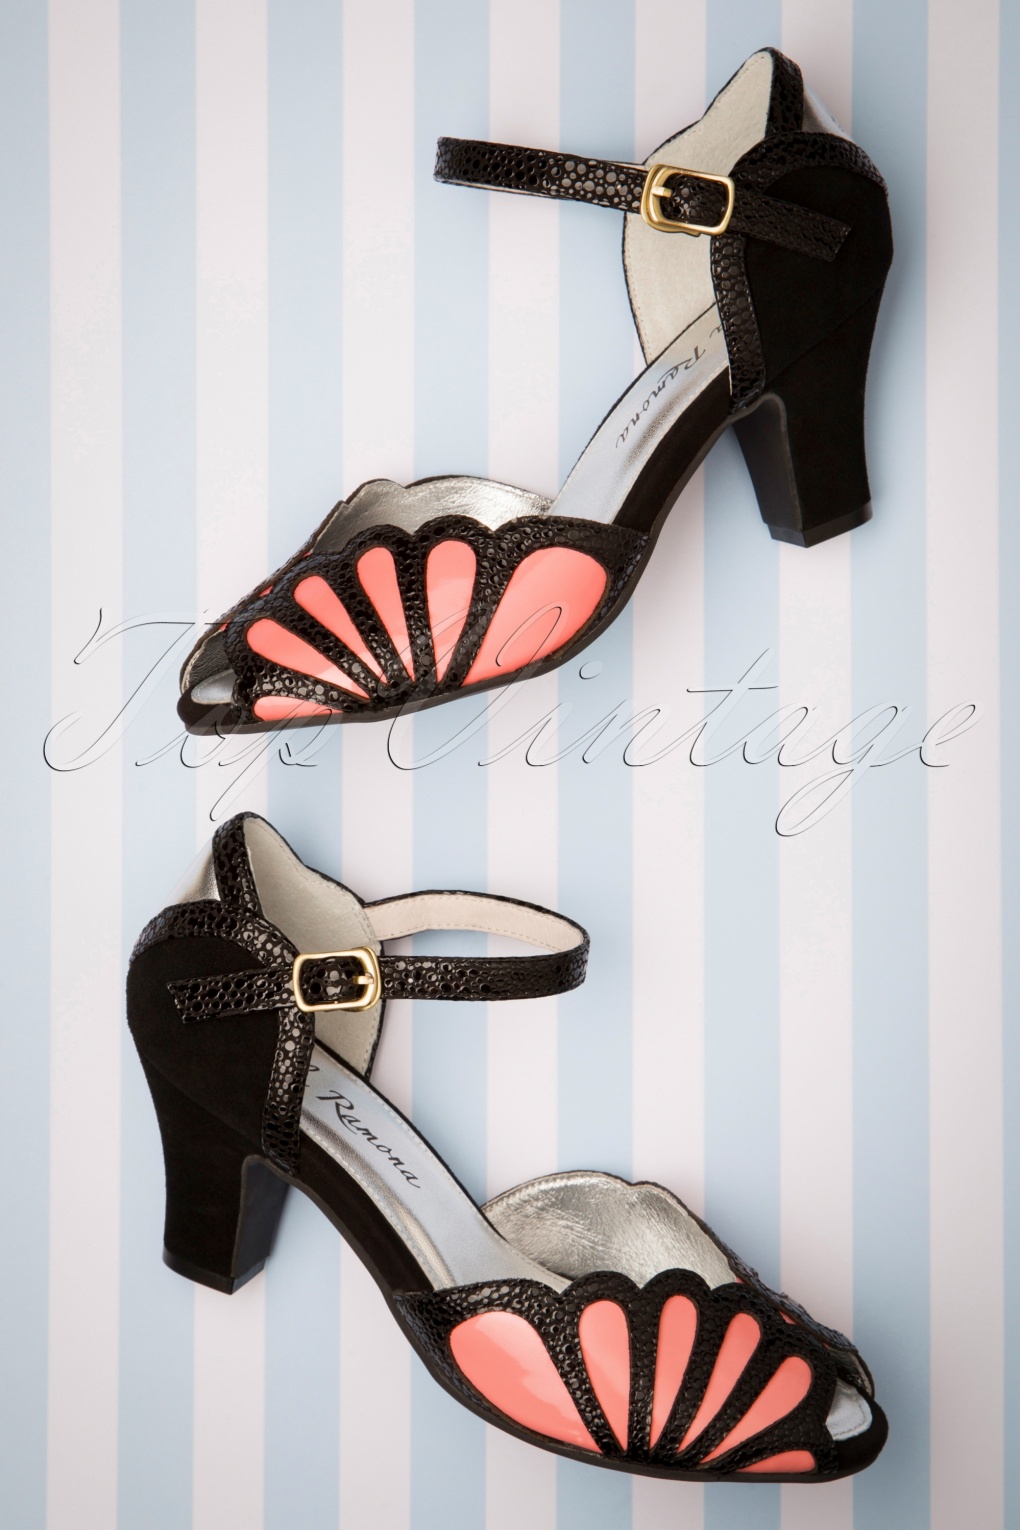 heks Utænkelig Demokrati 20s Ava Affection Sandals in Black and Pink